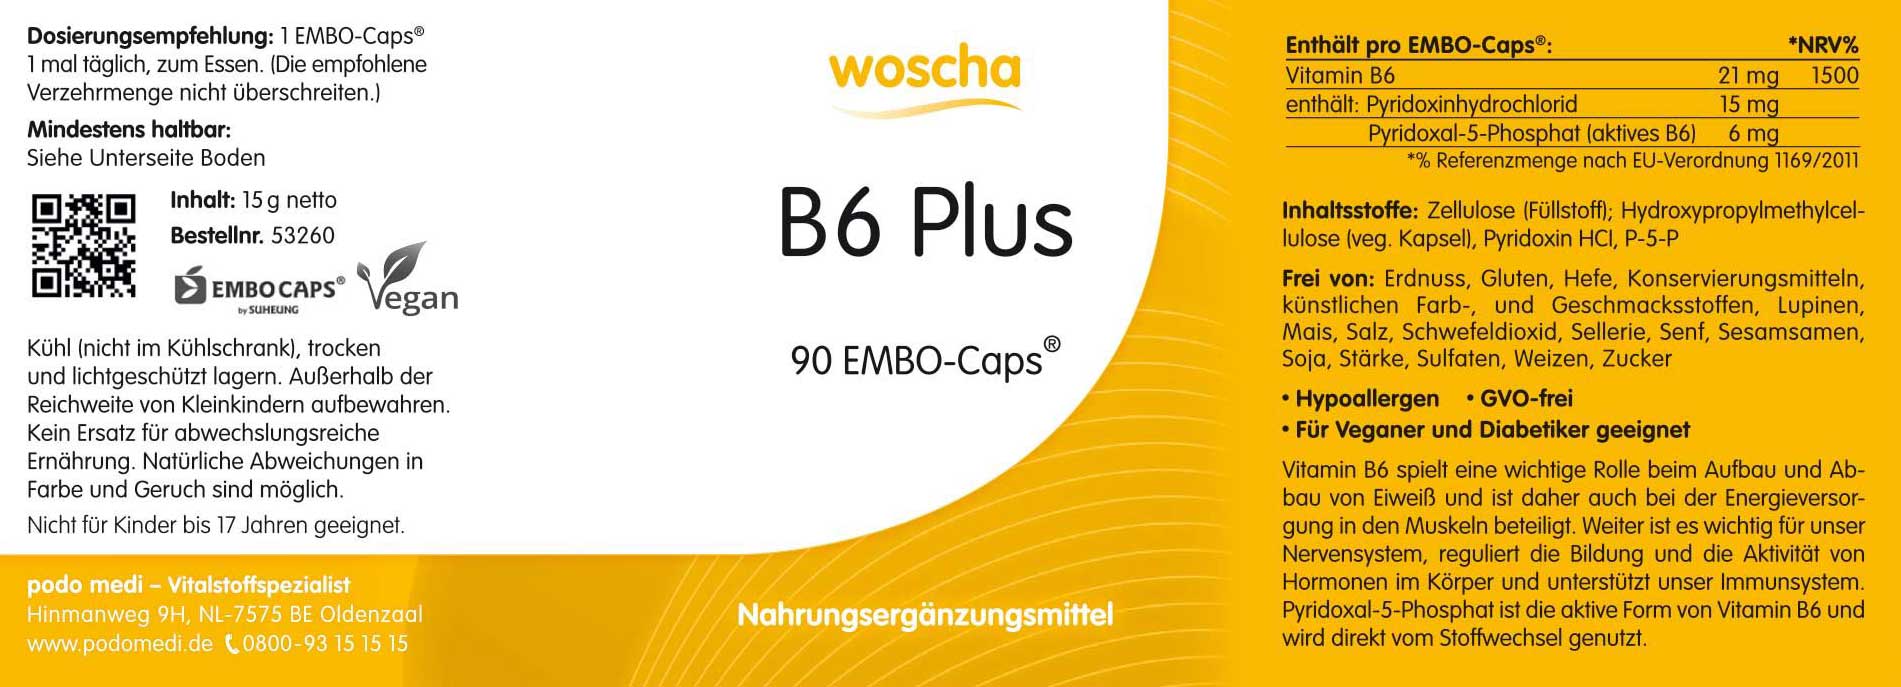 Woscha B6 Plus von podo medi beinhaltet 90 Kapseln Etikett